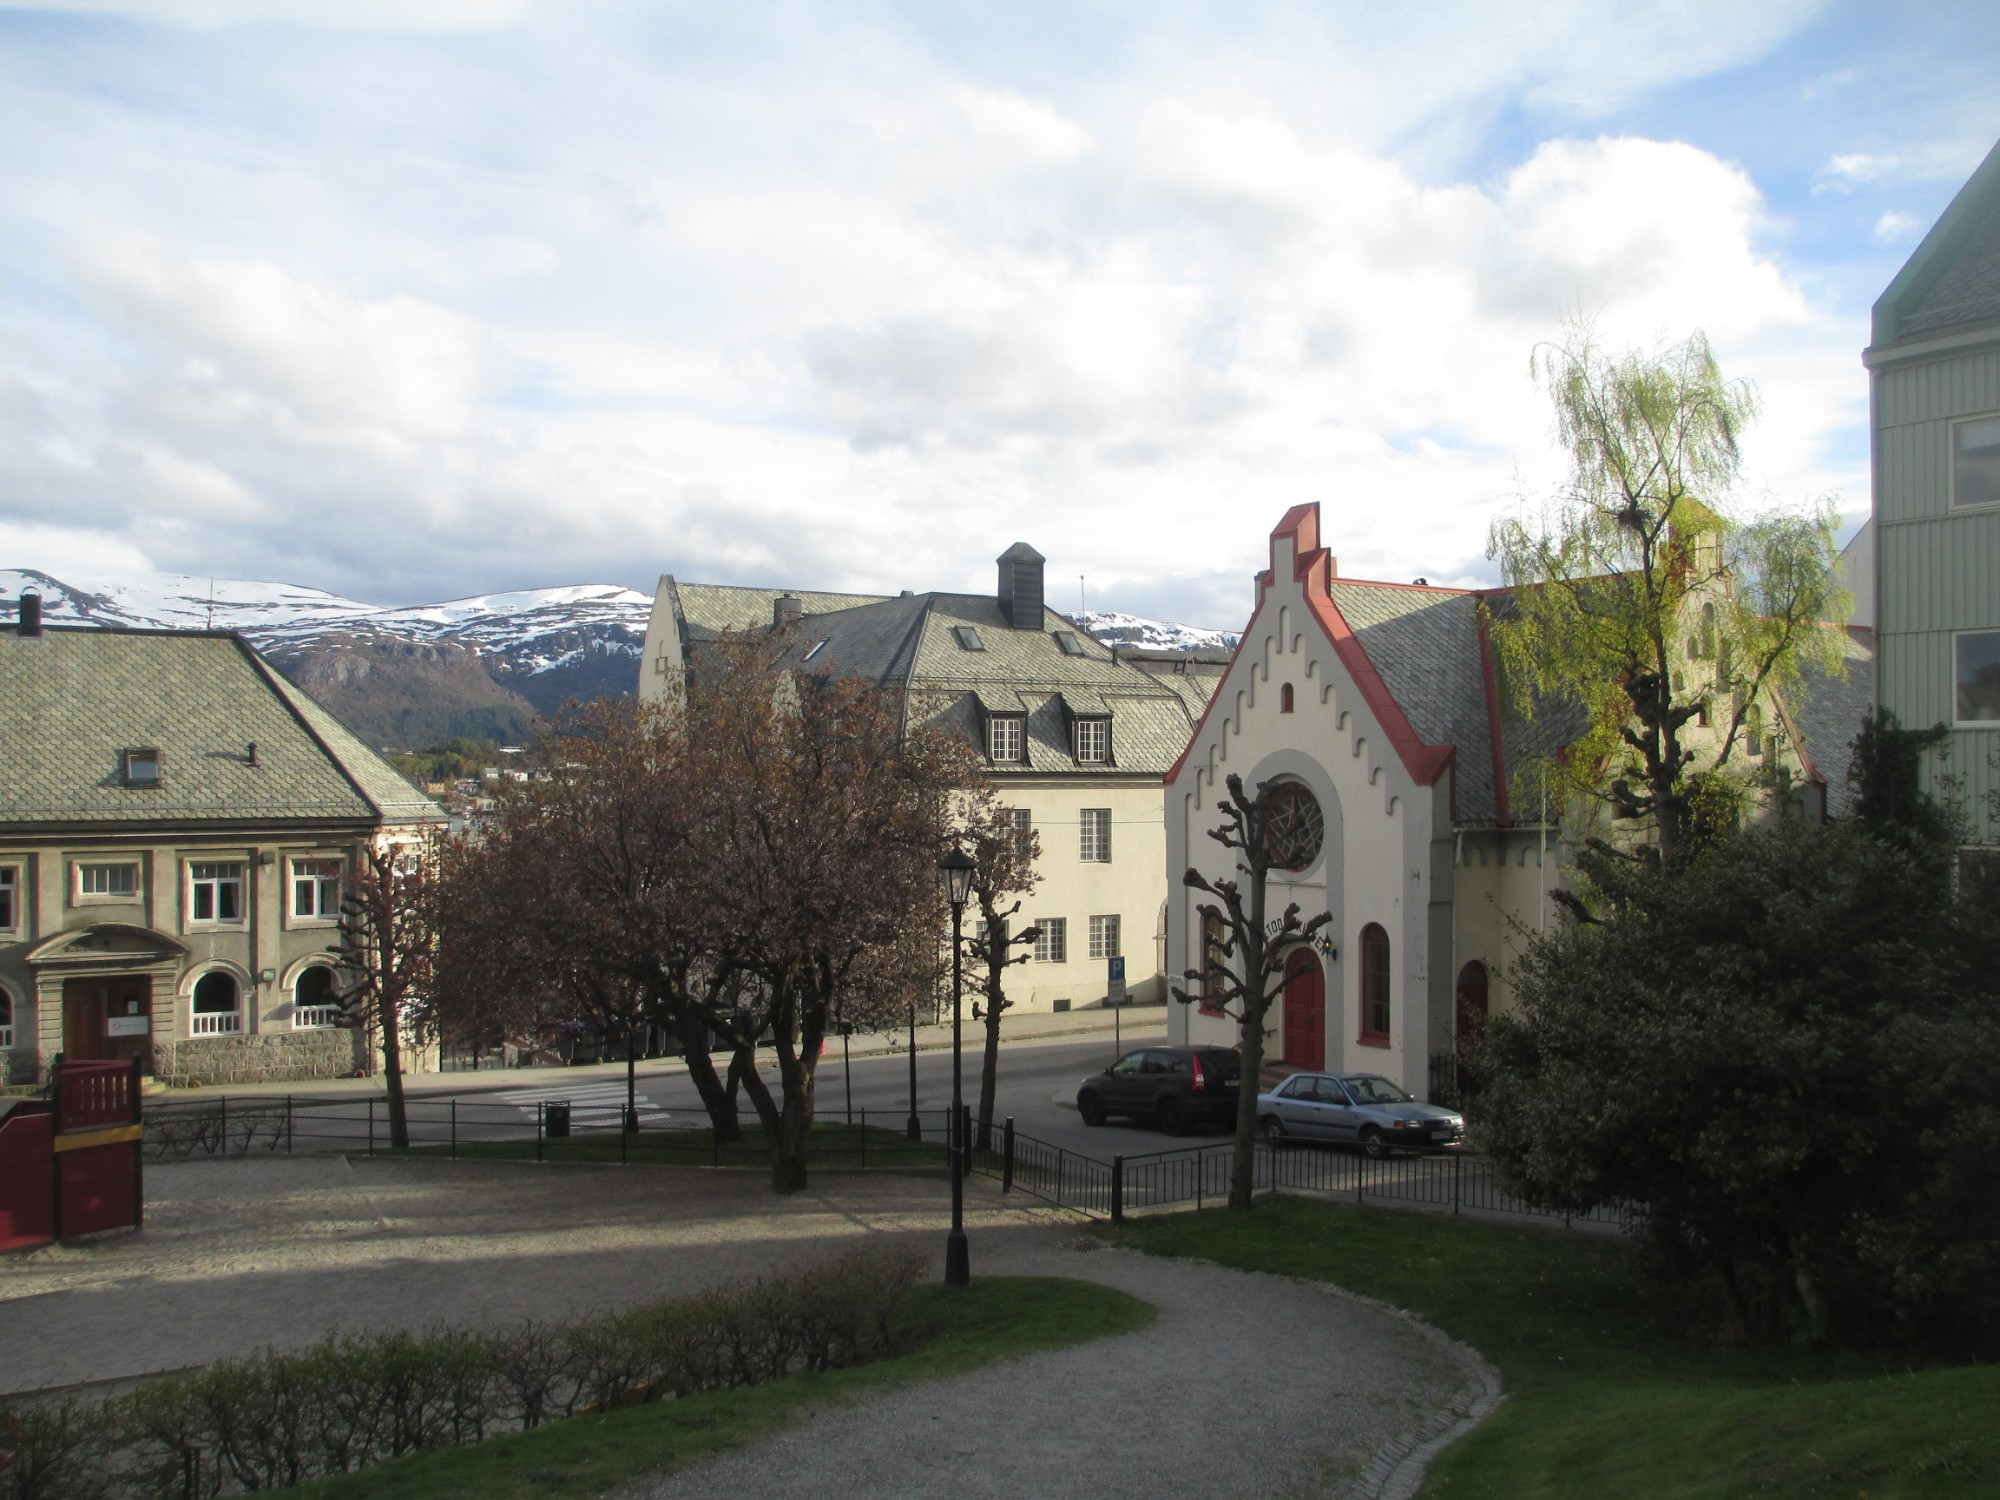 Aalesund, Norway